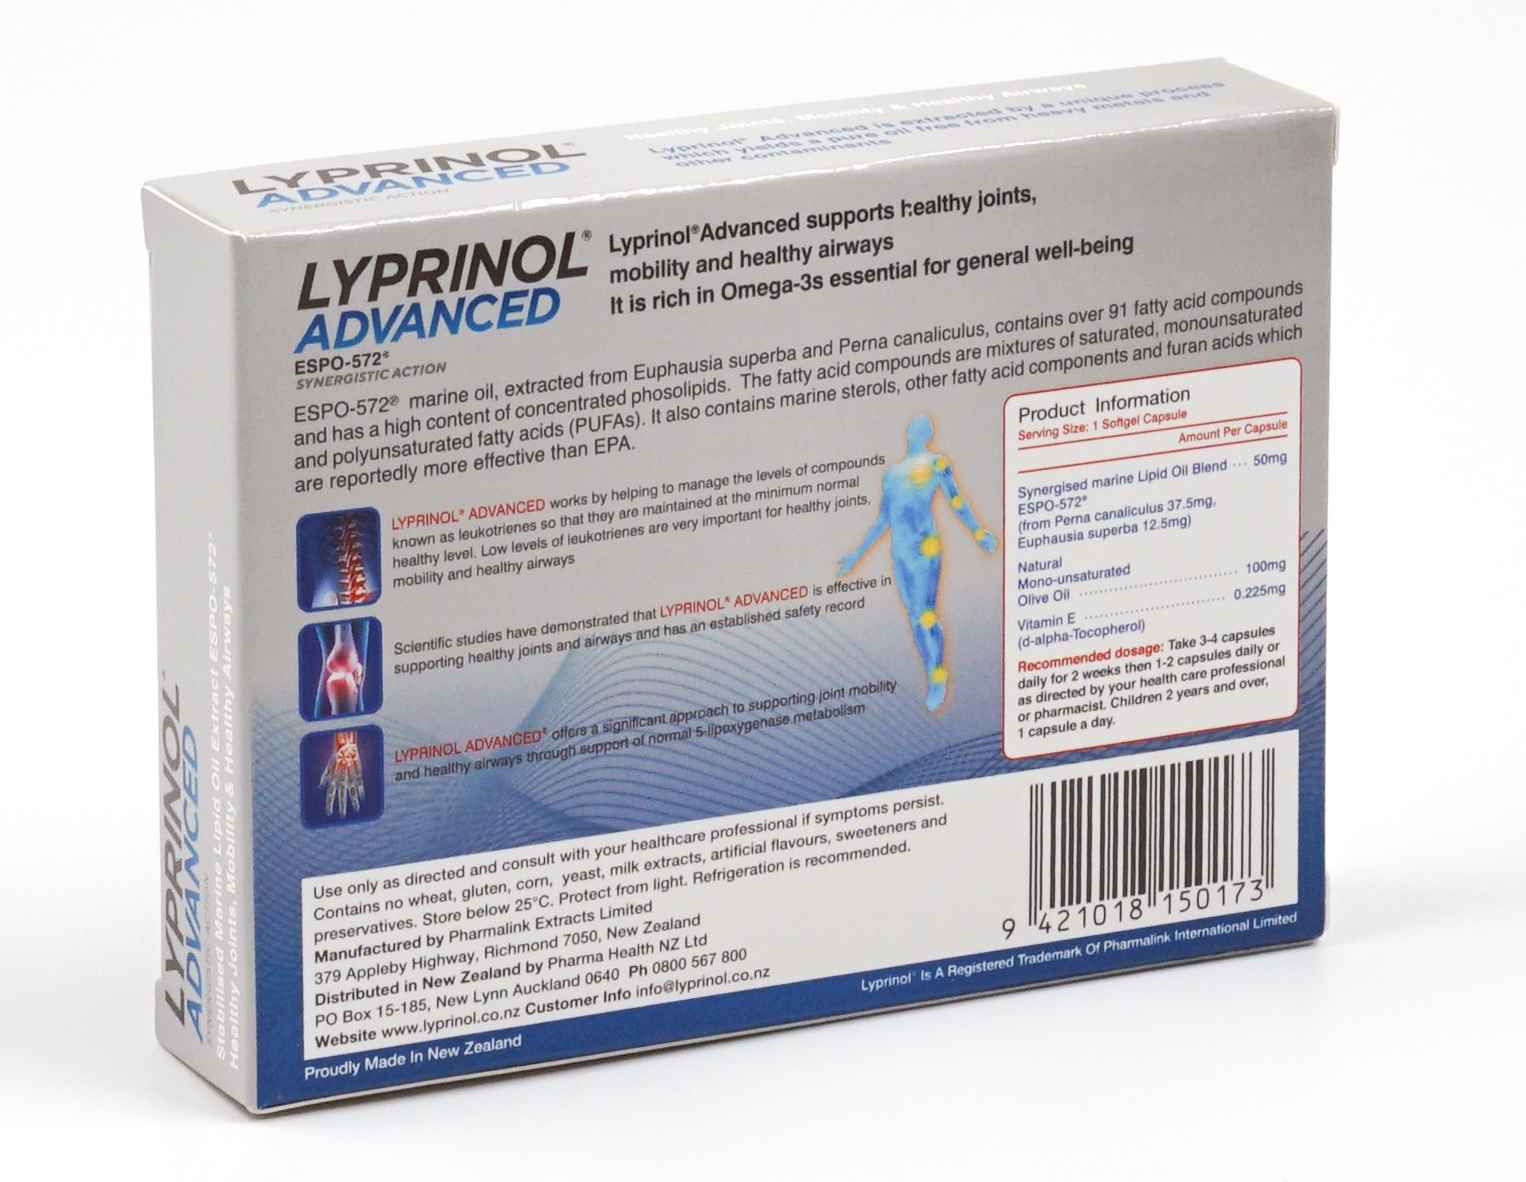 リプリノール アドバンス LYPRINOL ADVANCEDの+adilogluglobal.com.tr